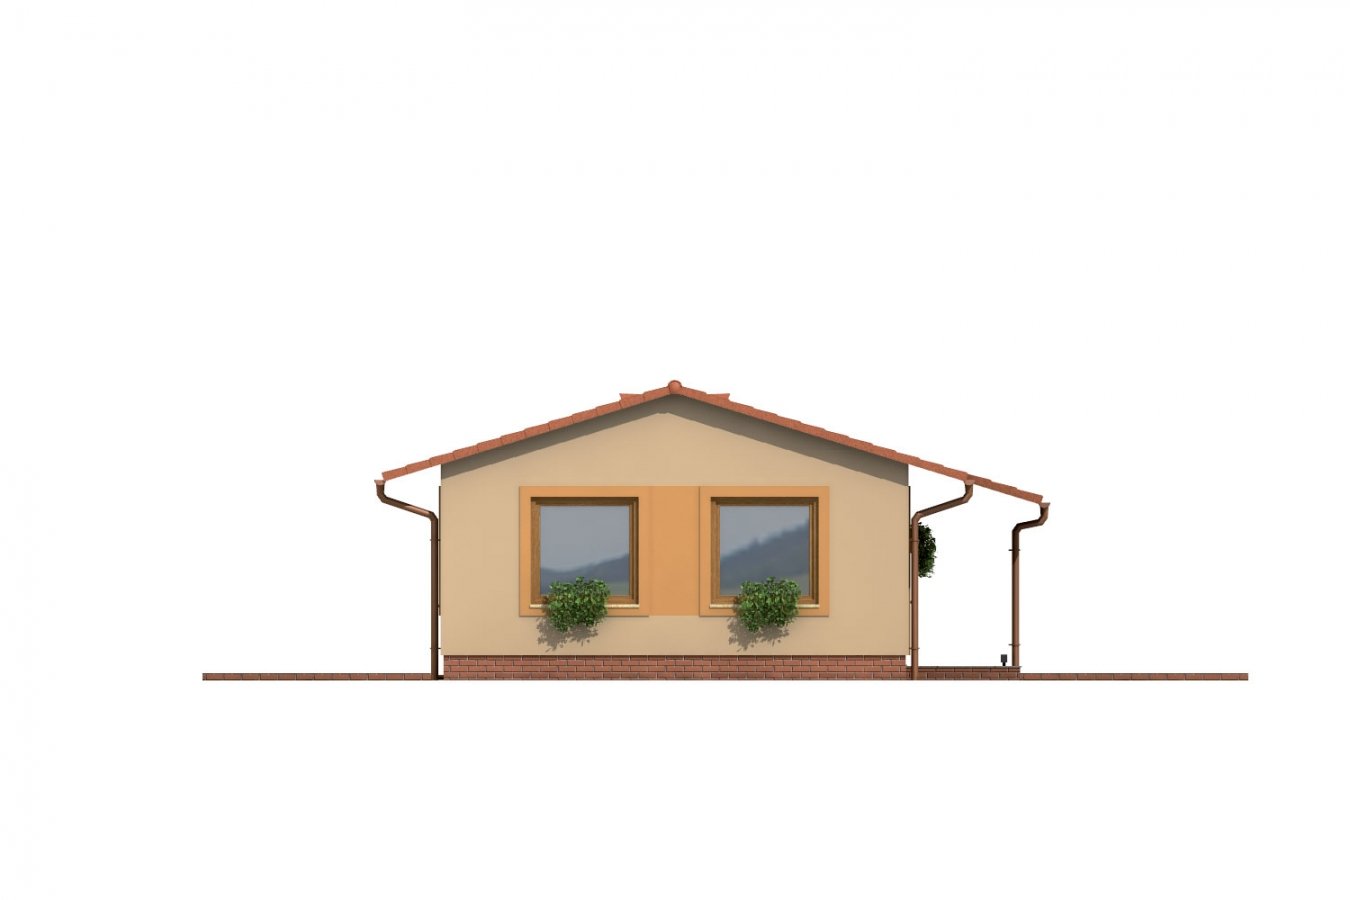 projekt domu so sedlovou strechou vhodný na úzky pozemok